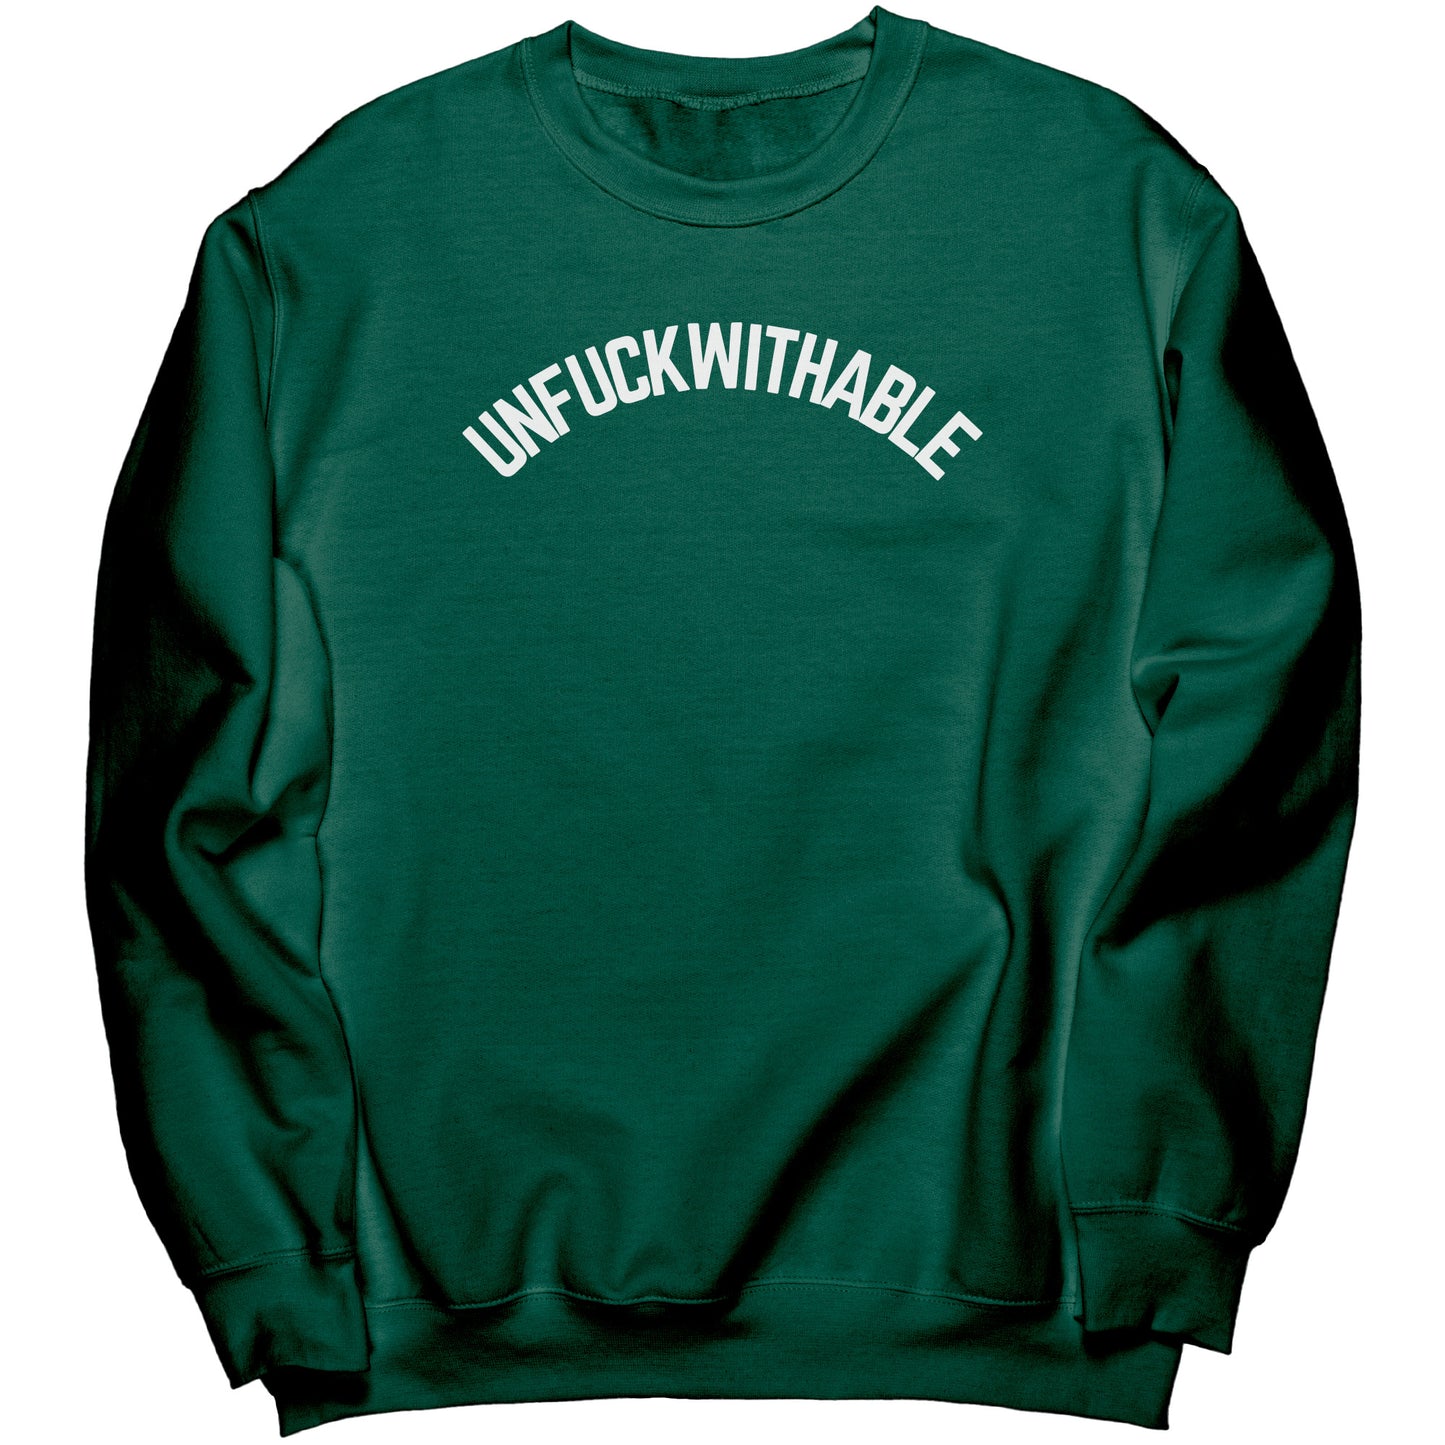 Unf withable Crew Sweatshirt